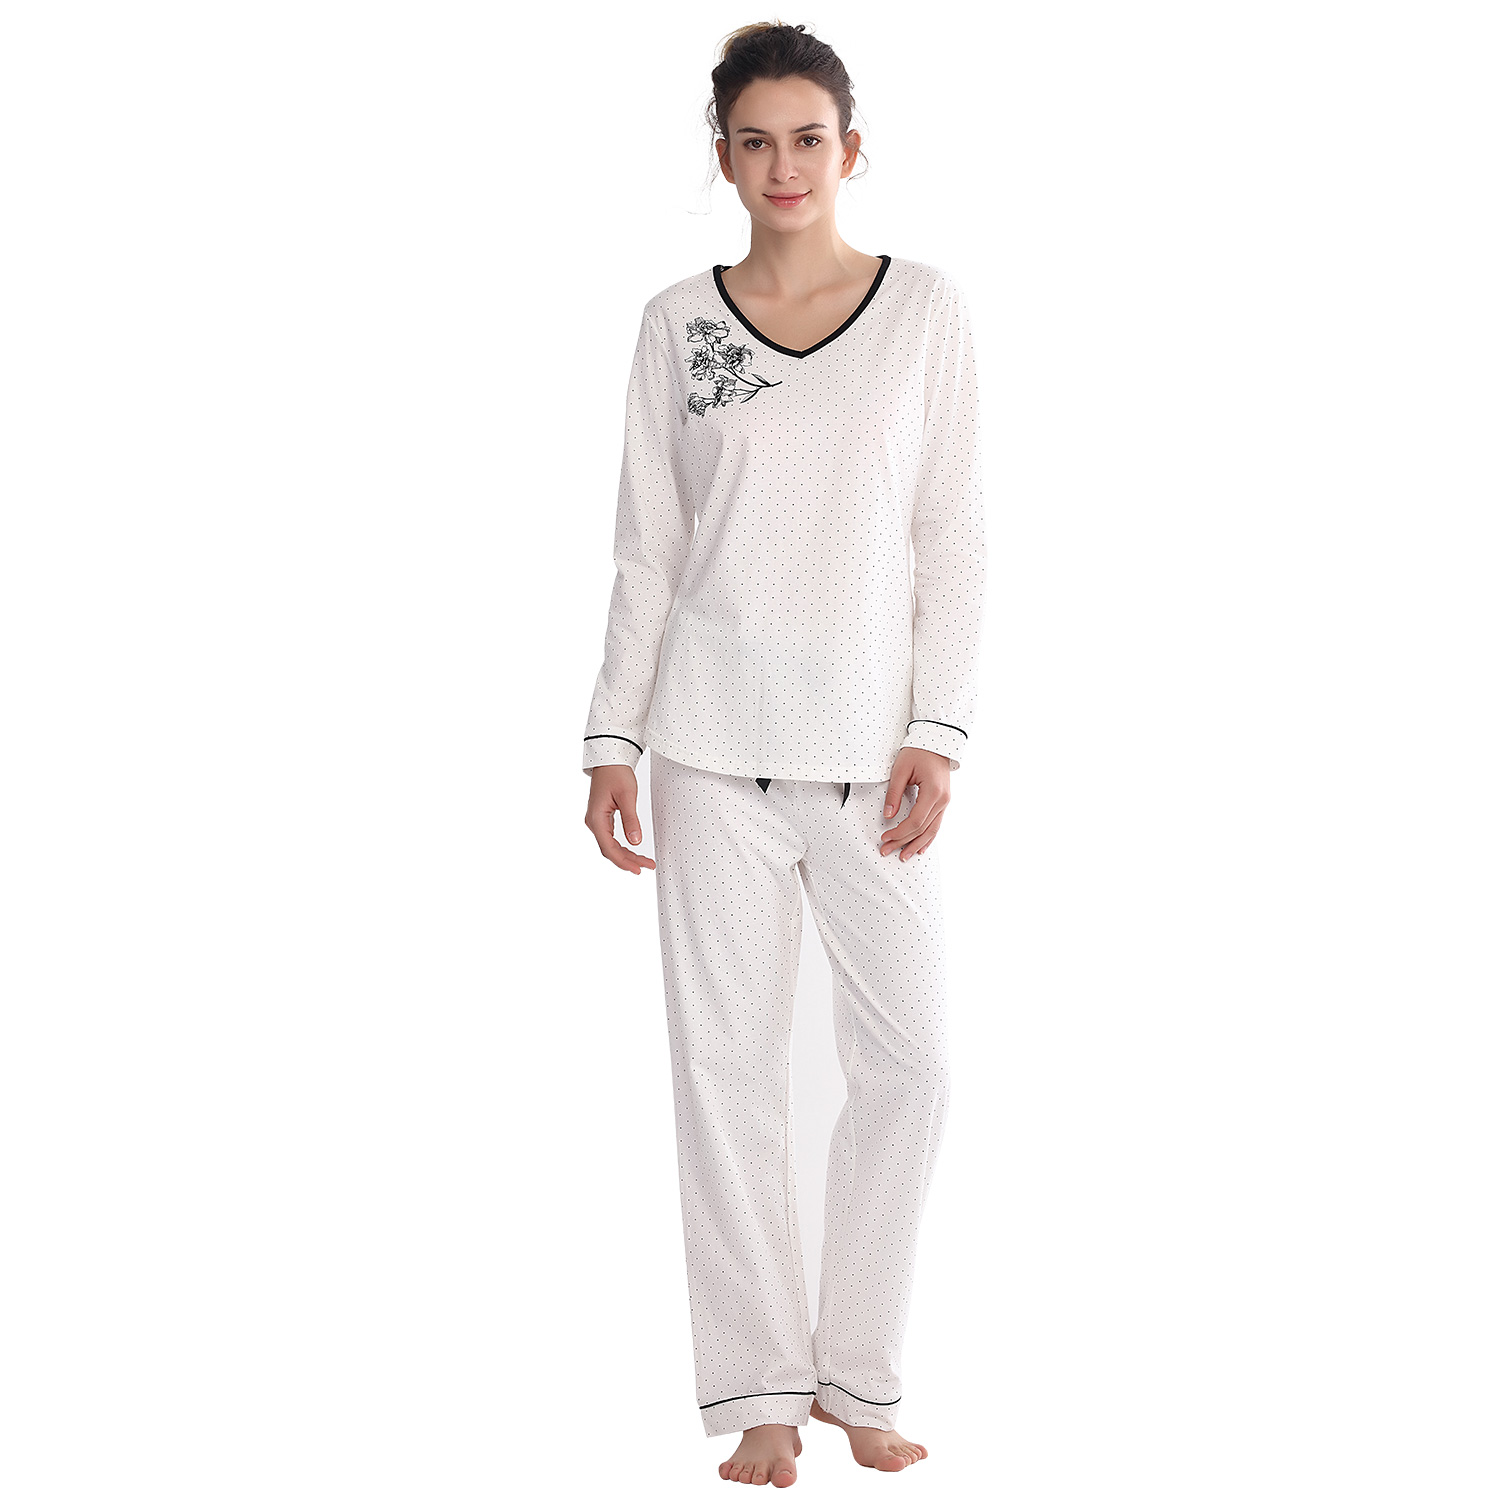 Qwzndzgr Women's Long Cotton Pajama Sets